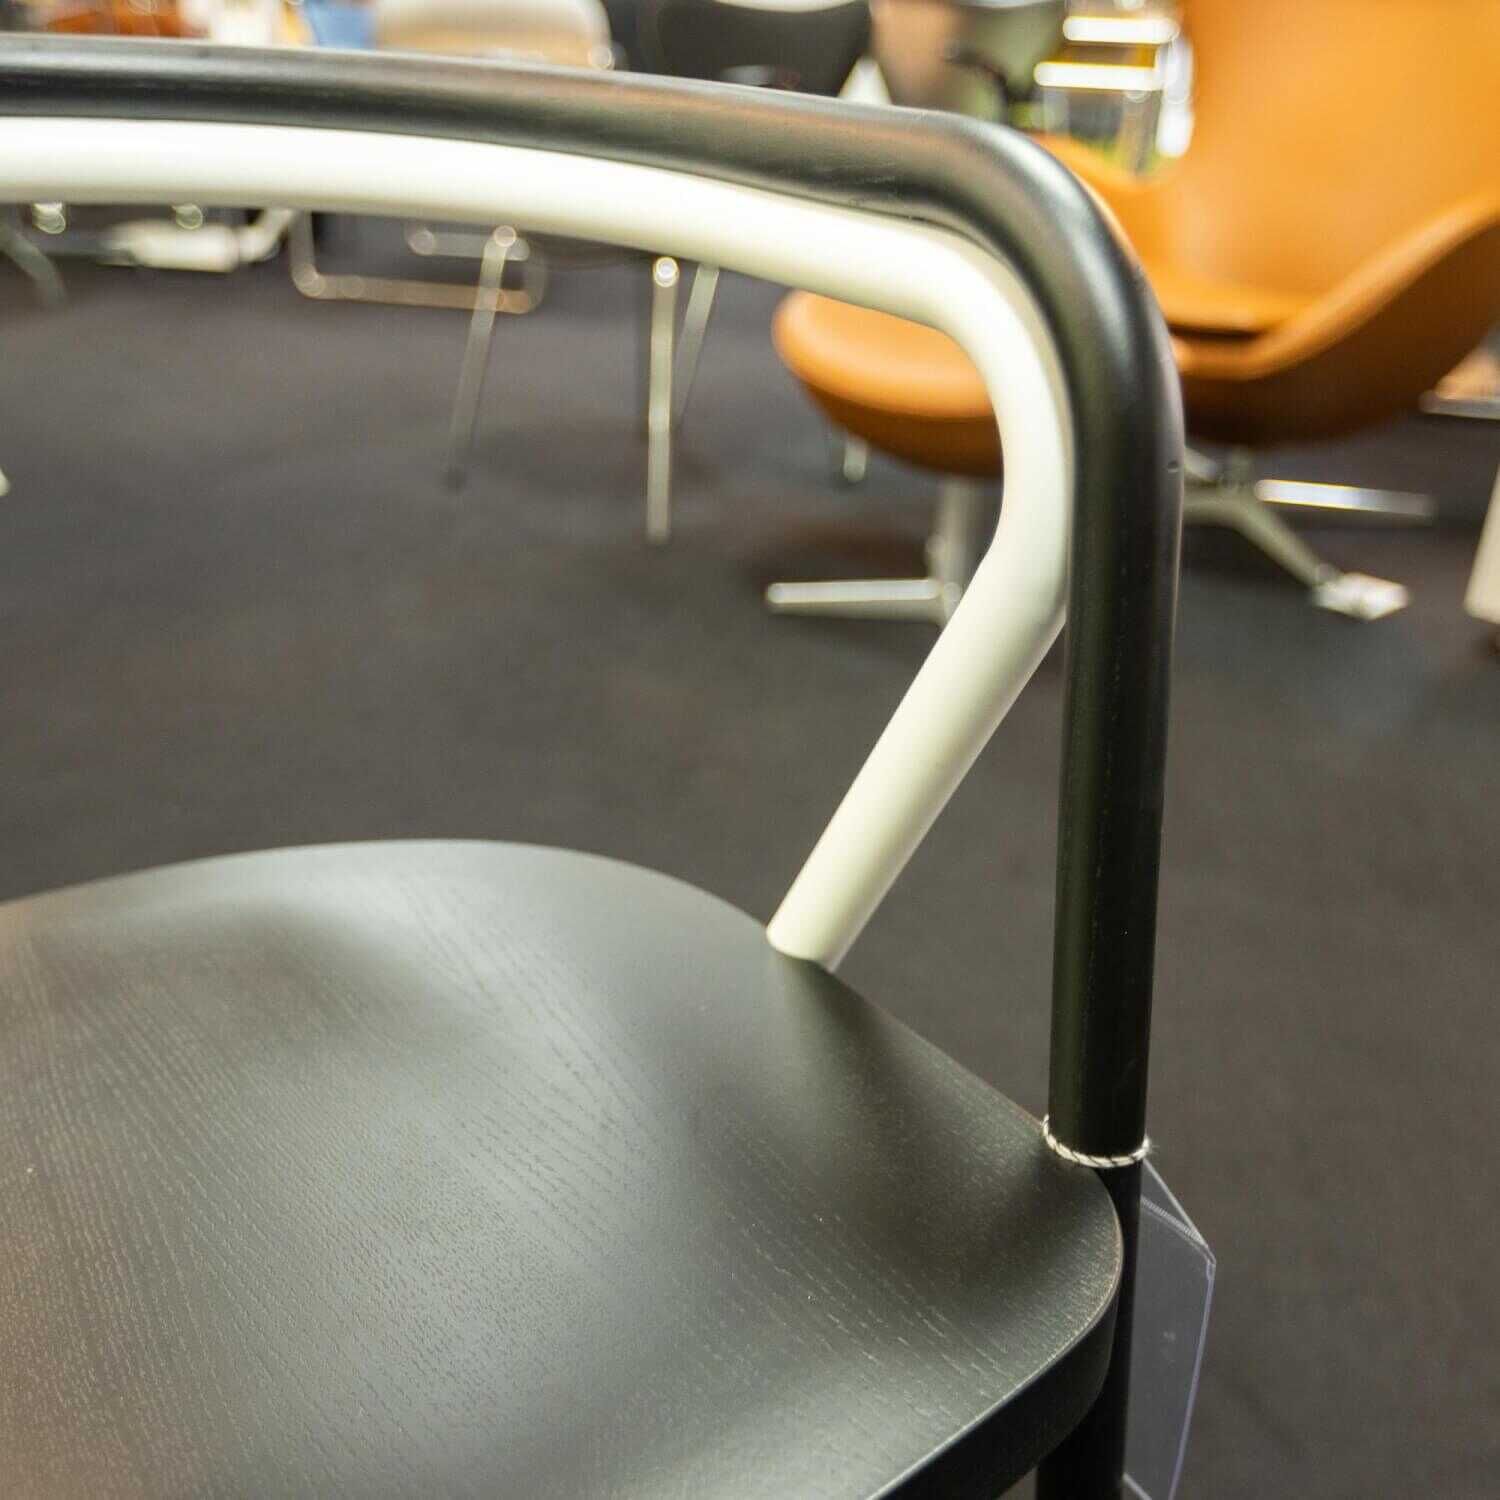 Chair 2 Gestell Esche Massiv Schwarz Metallrohr Weiß Matt Sitzfläche Birkenholz mit Massivesche